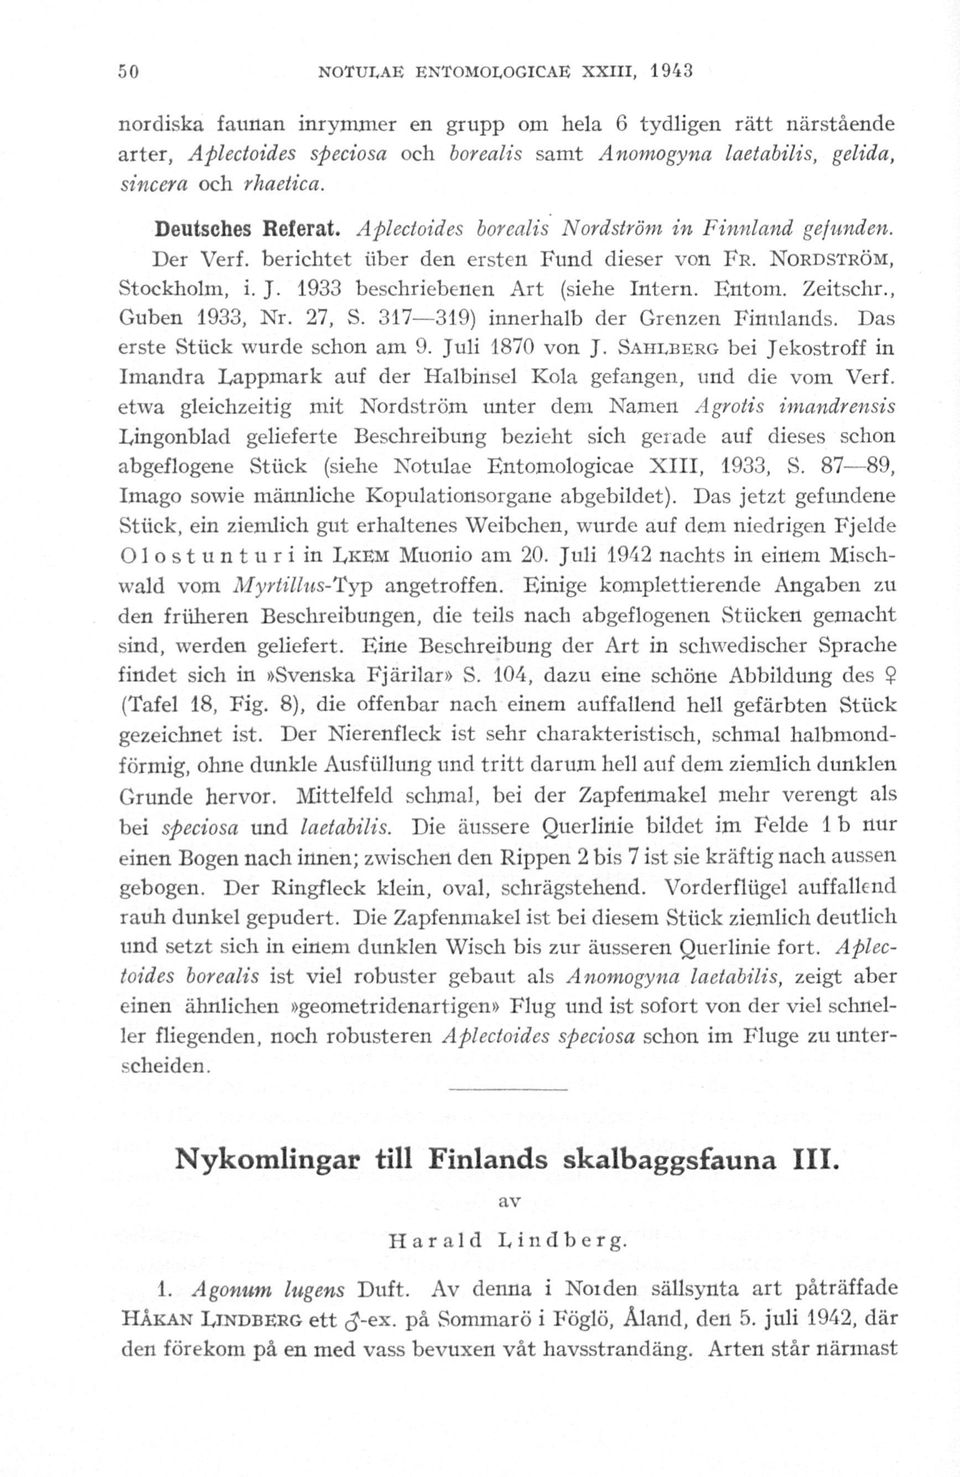 1933 beschriebenen Art (siehe Intern. Entom. Zeitschr., Guben 1933, Nr. 27, S. 317 319) innerhalb der Grenzen Fintilands. erste Stiick wurde schon am 9. Juli 1870 von J.